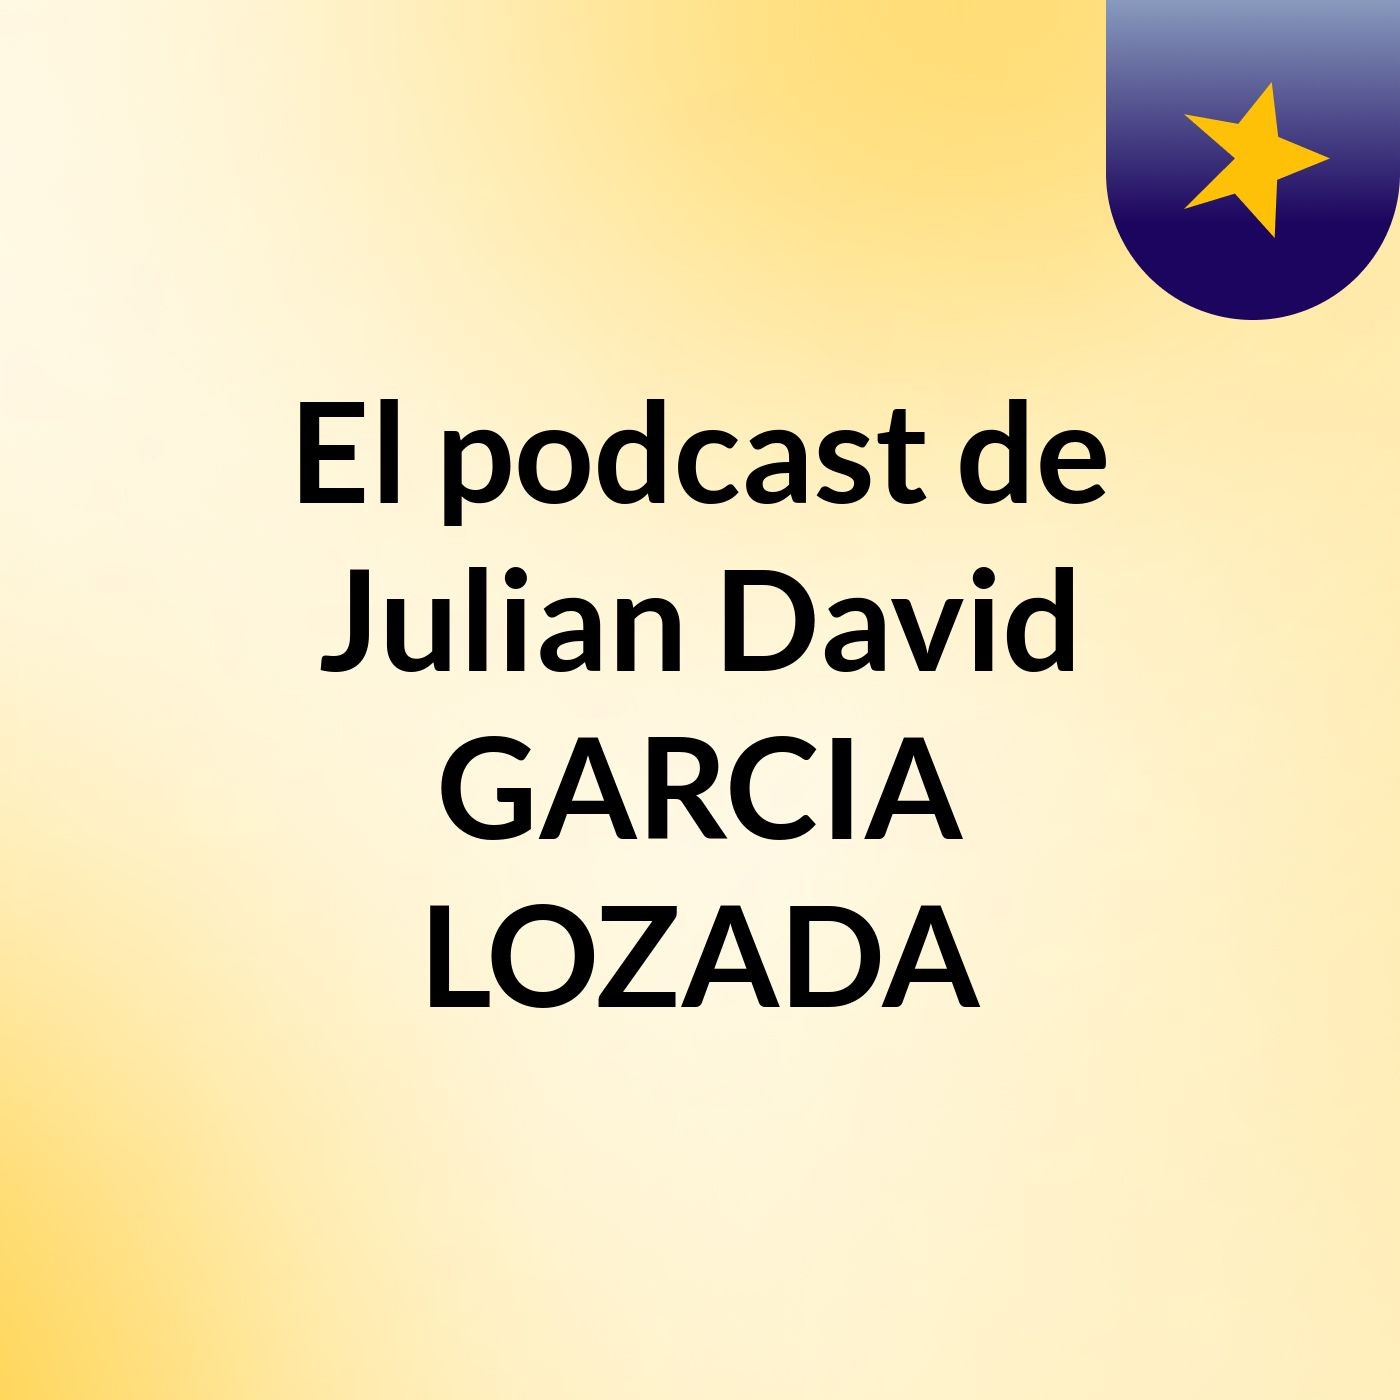 El podcast de Julian David GARCIA LOZADA